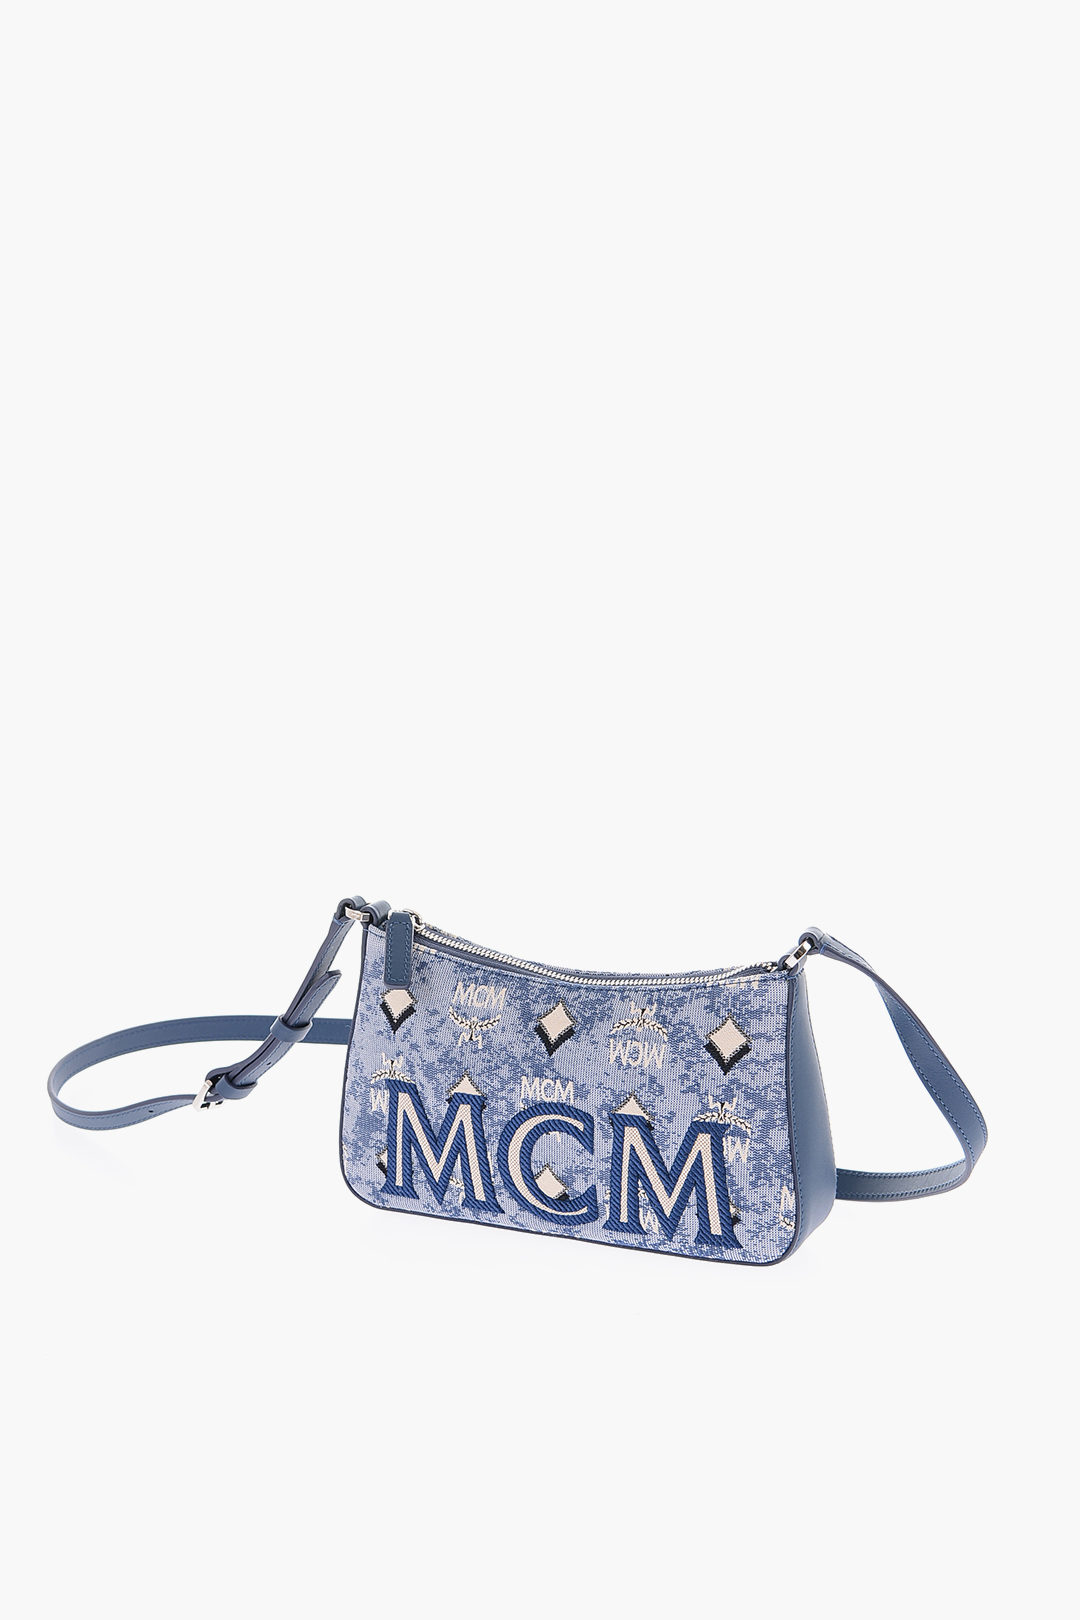 Mcm Medium Aren Shoulder Bag - Blue